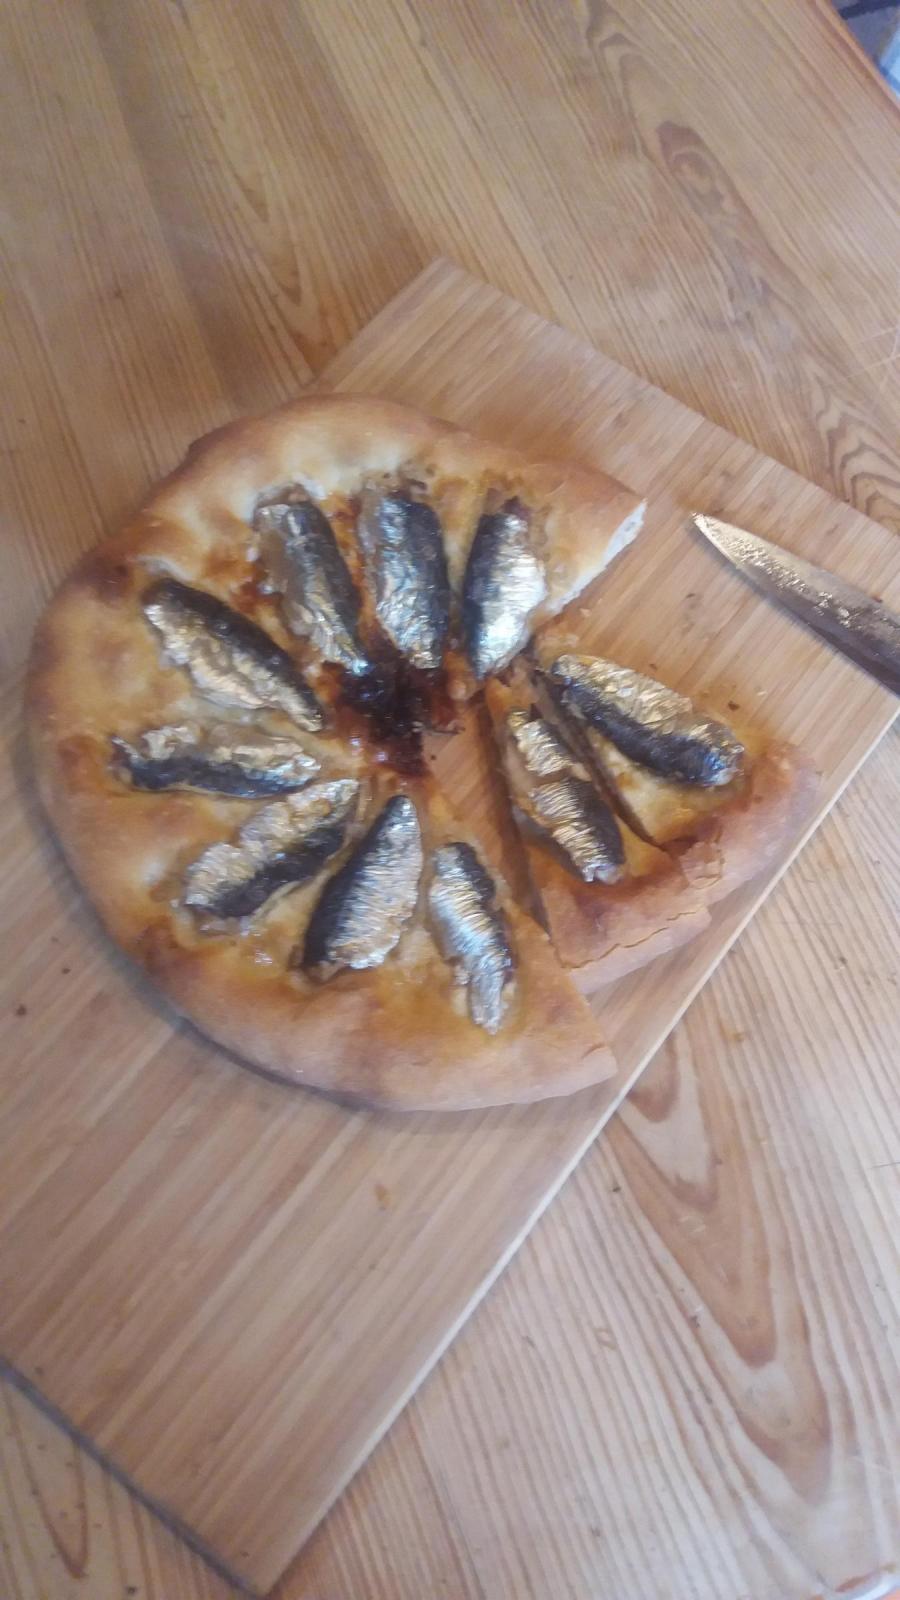 sardine "bôla"